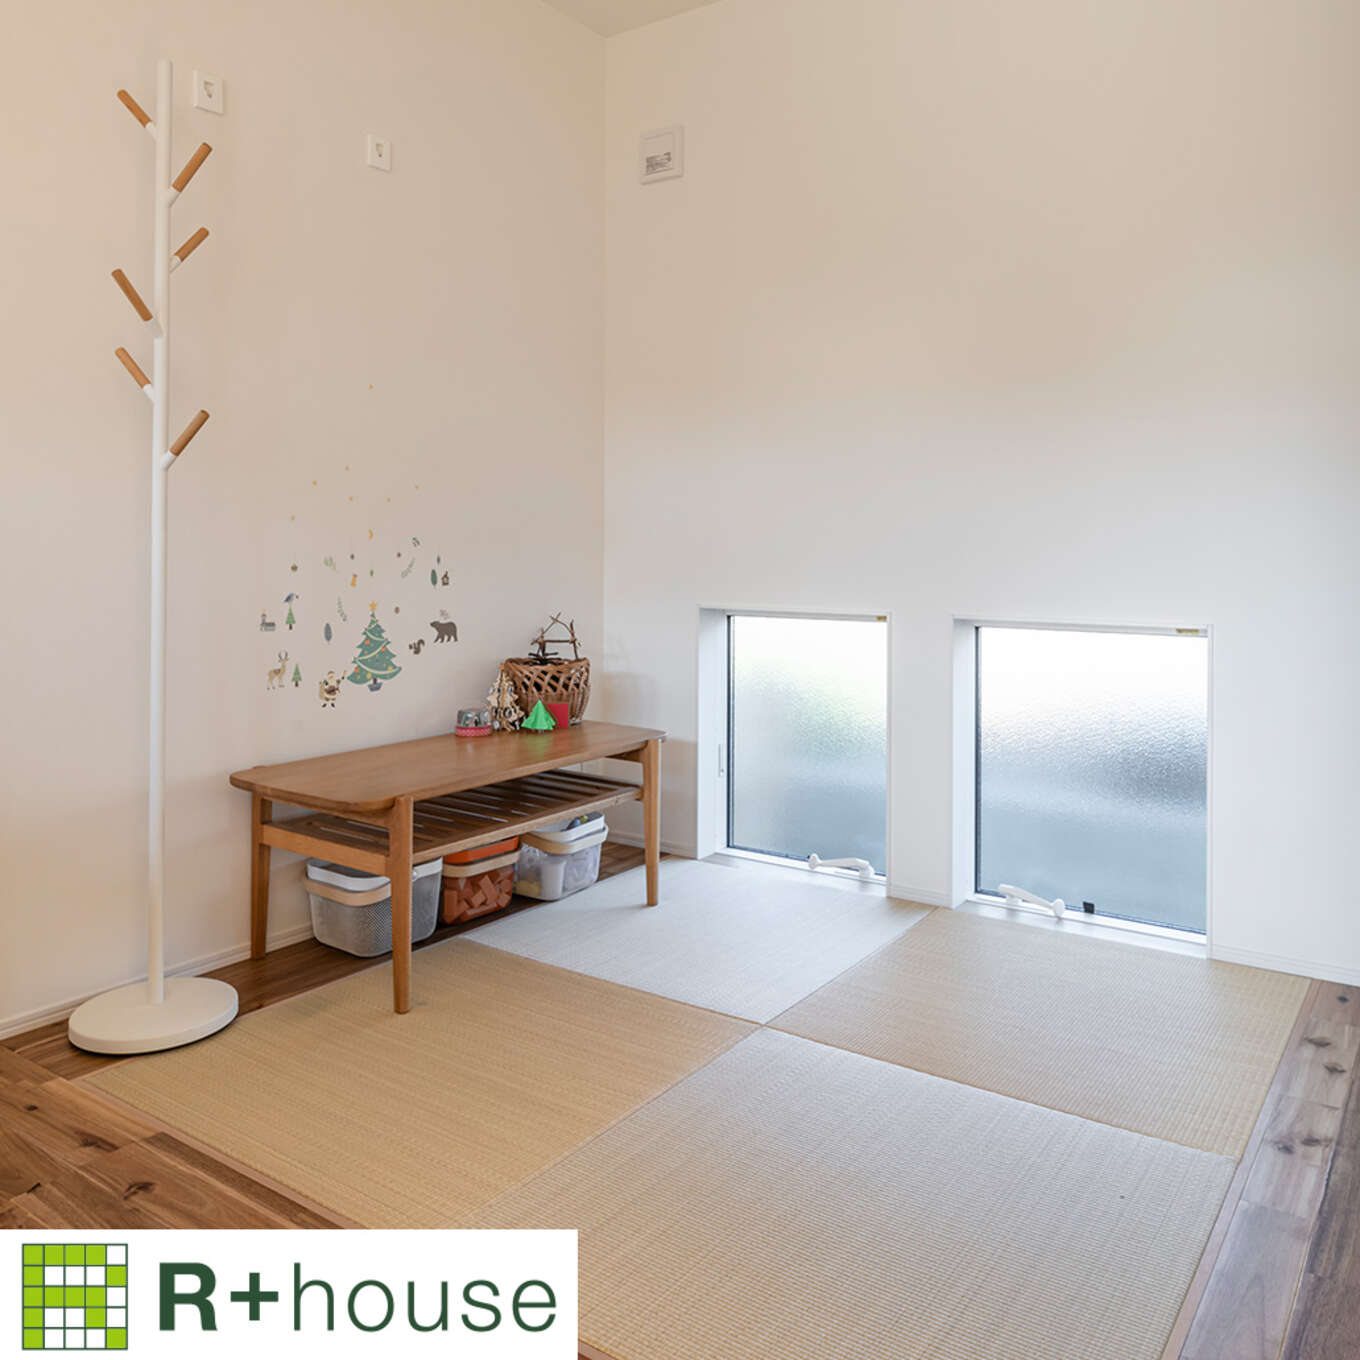 R+houseの物件の畳コーナーの写真です。大きめの四角い畳が四枚並んだスペース。すりガラスの窓もあり明るい。